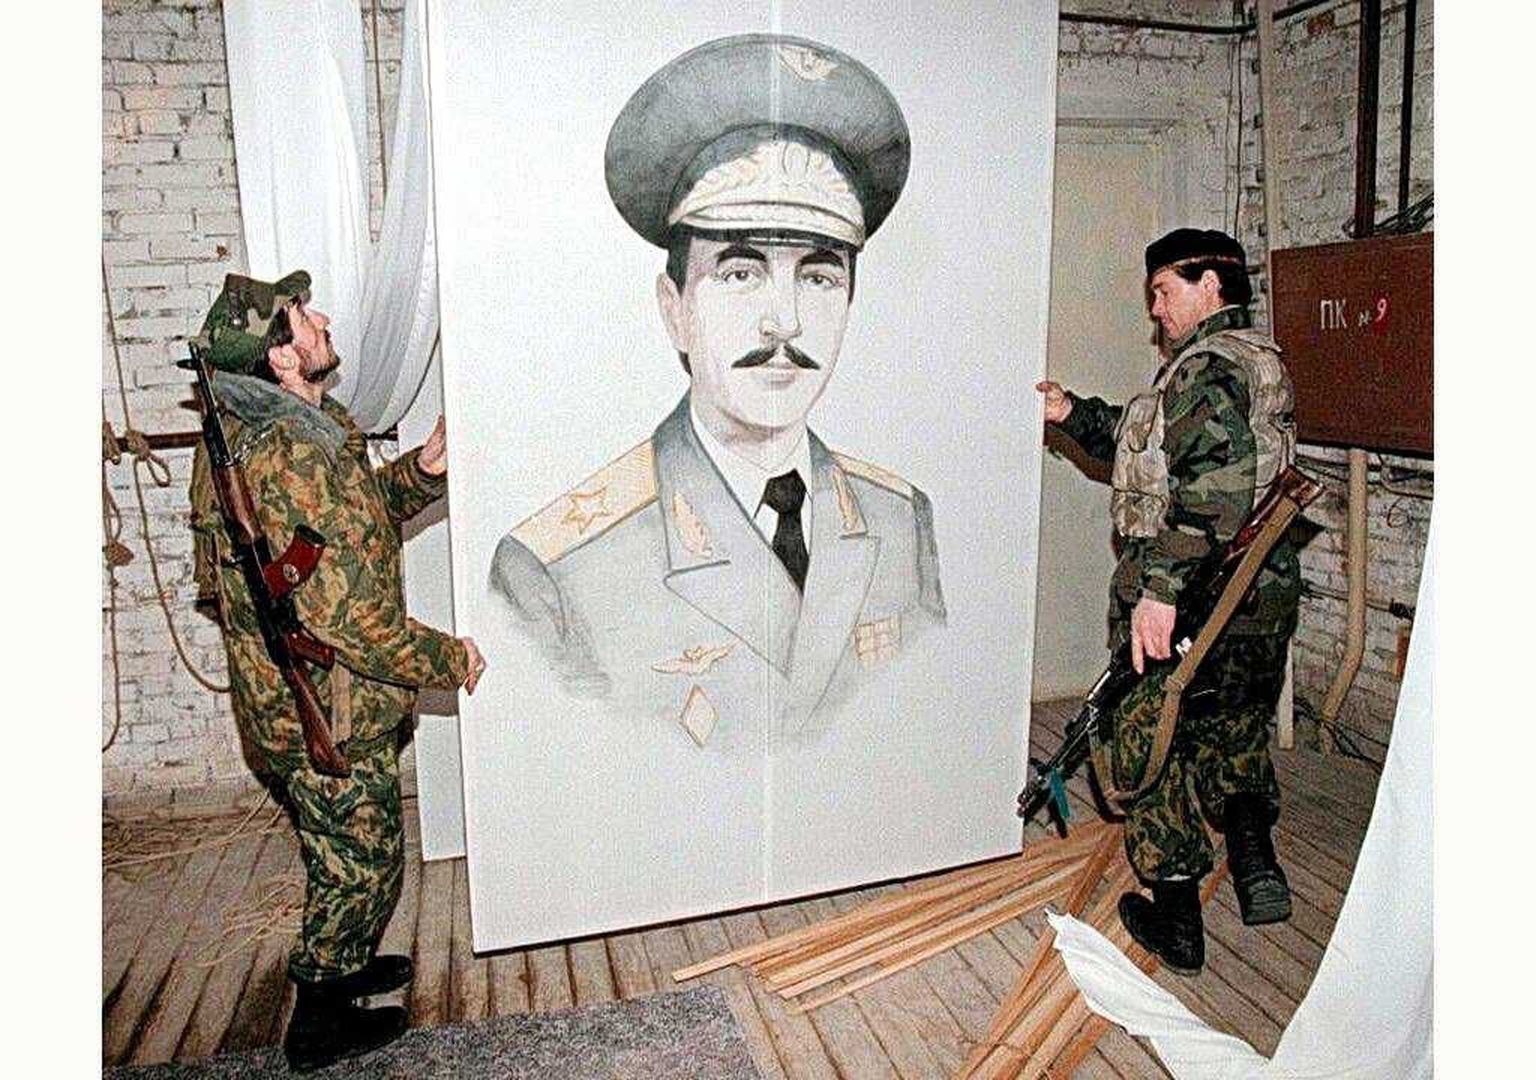 Arhiivifoto aastast 1997: tšetšeeni võitlejad Džohhar Dudajevi pildiga.